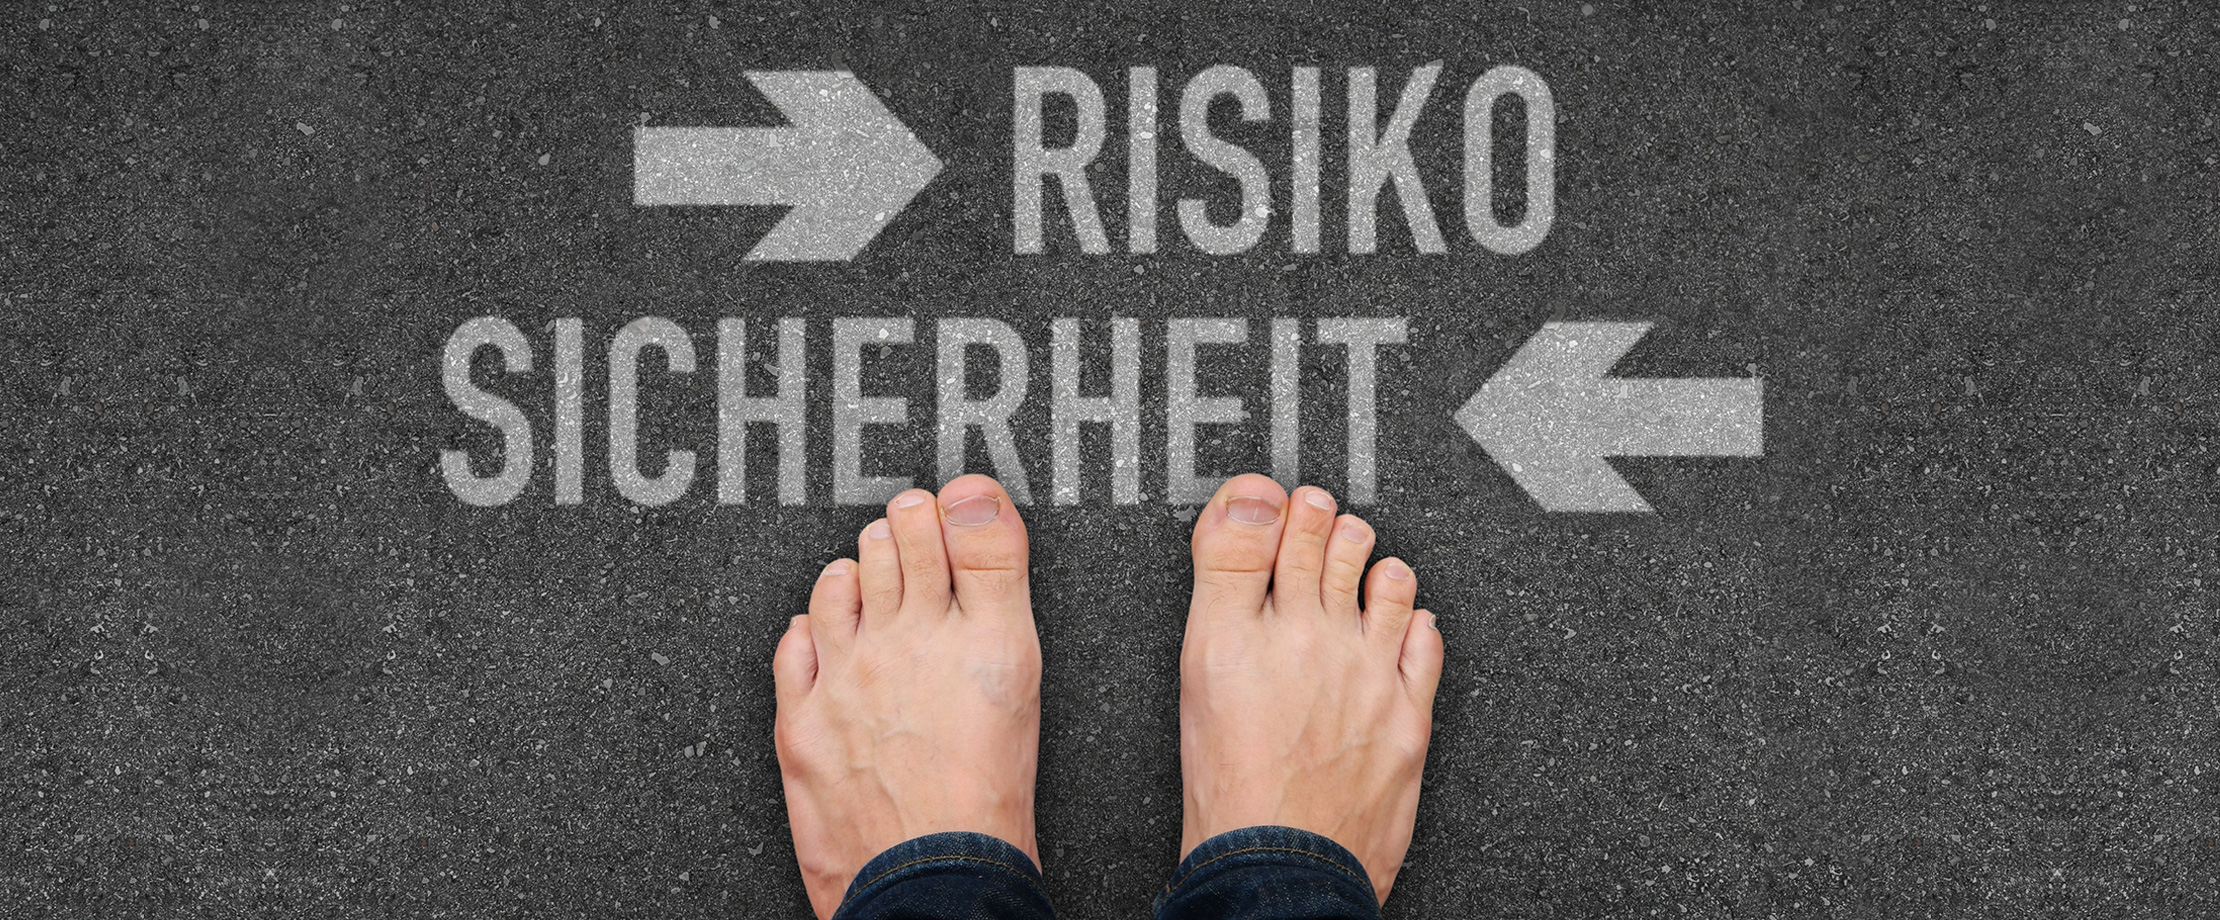 Jemand steht barfuß auf Asphalt. Vor den Füßen der Person ist mit Kreide „Risiko“ und ein Pfeil nach rechts sowie „Sicherheit“ und ein Pfeil nach links abgebildet.